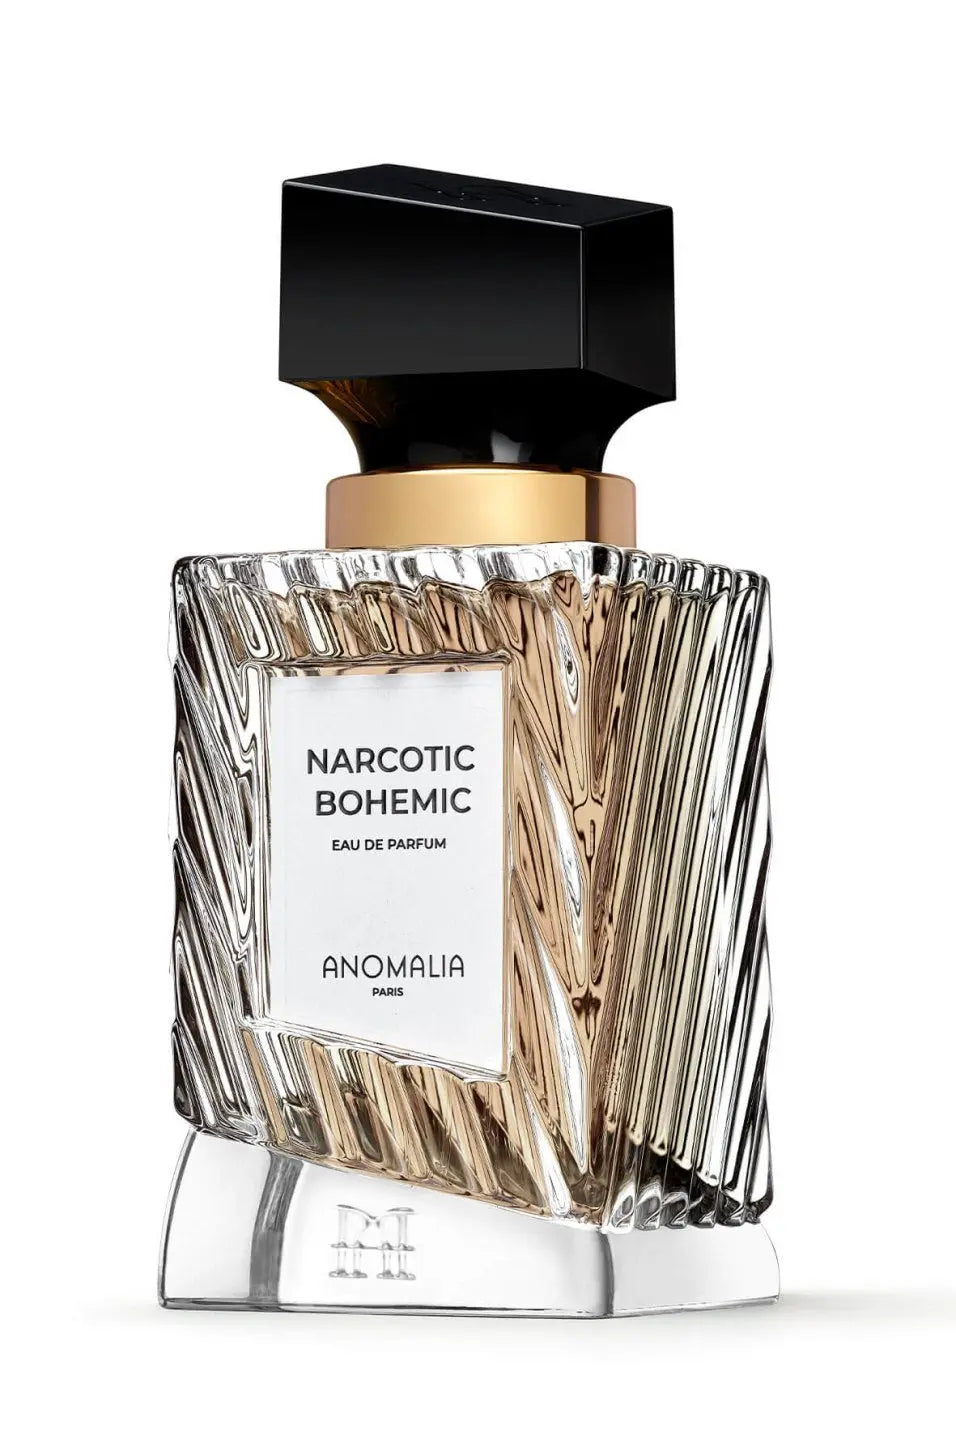 Anomalia Narcotic Bohemic eau de parfum - 70 ml